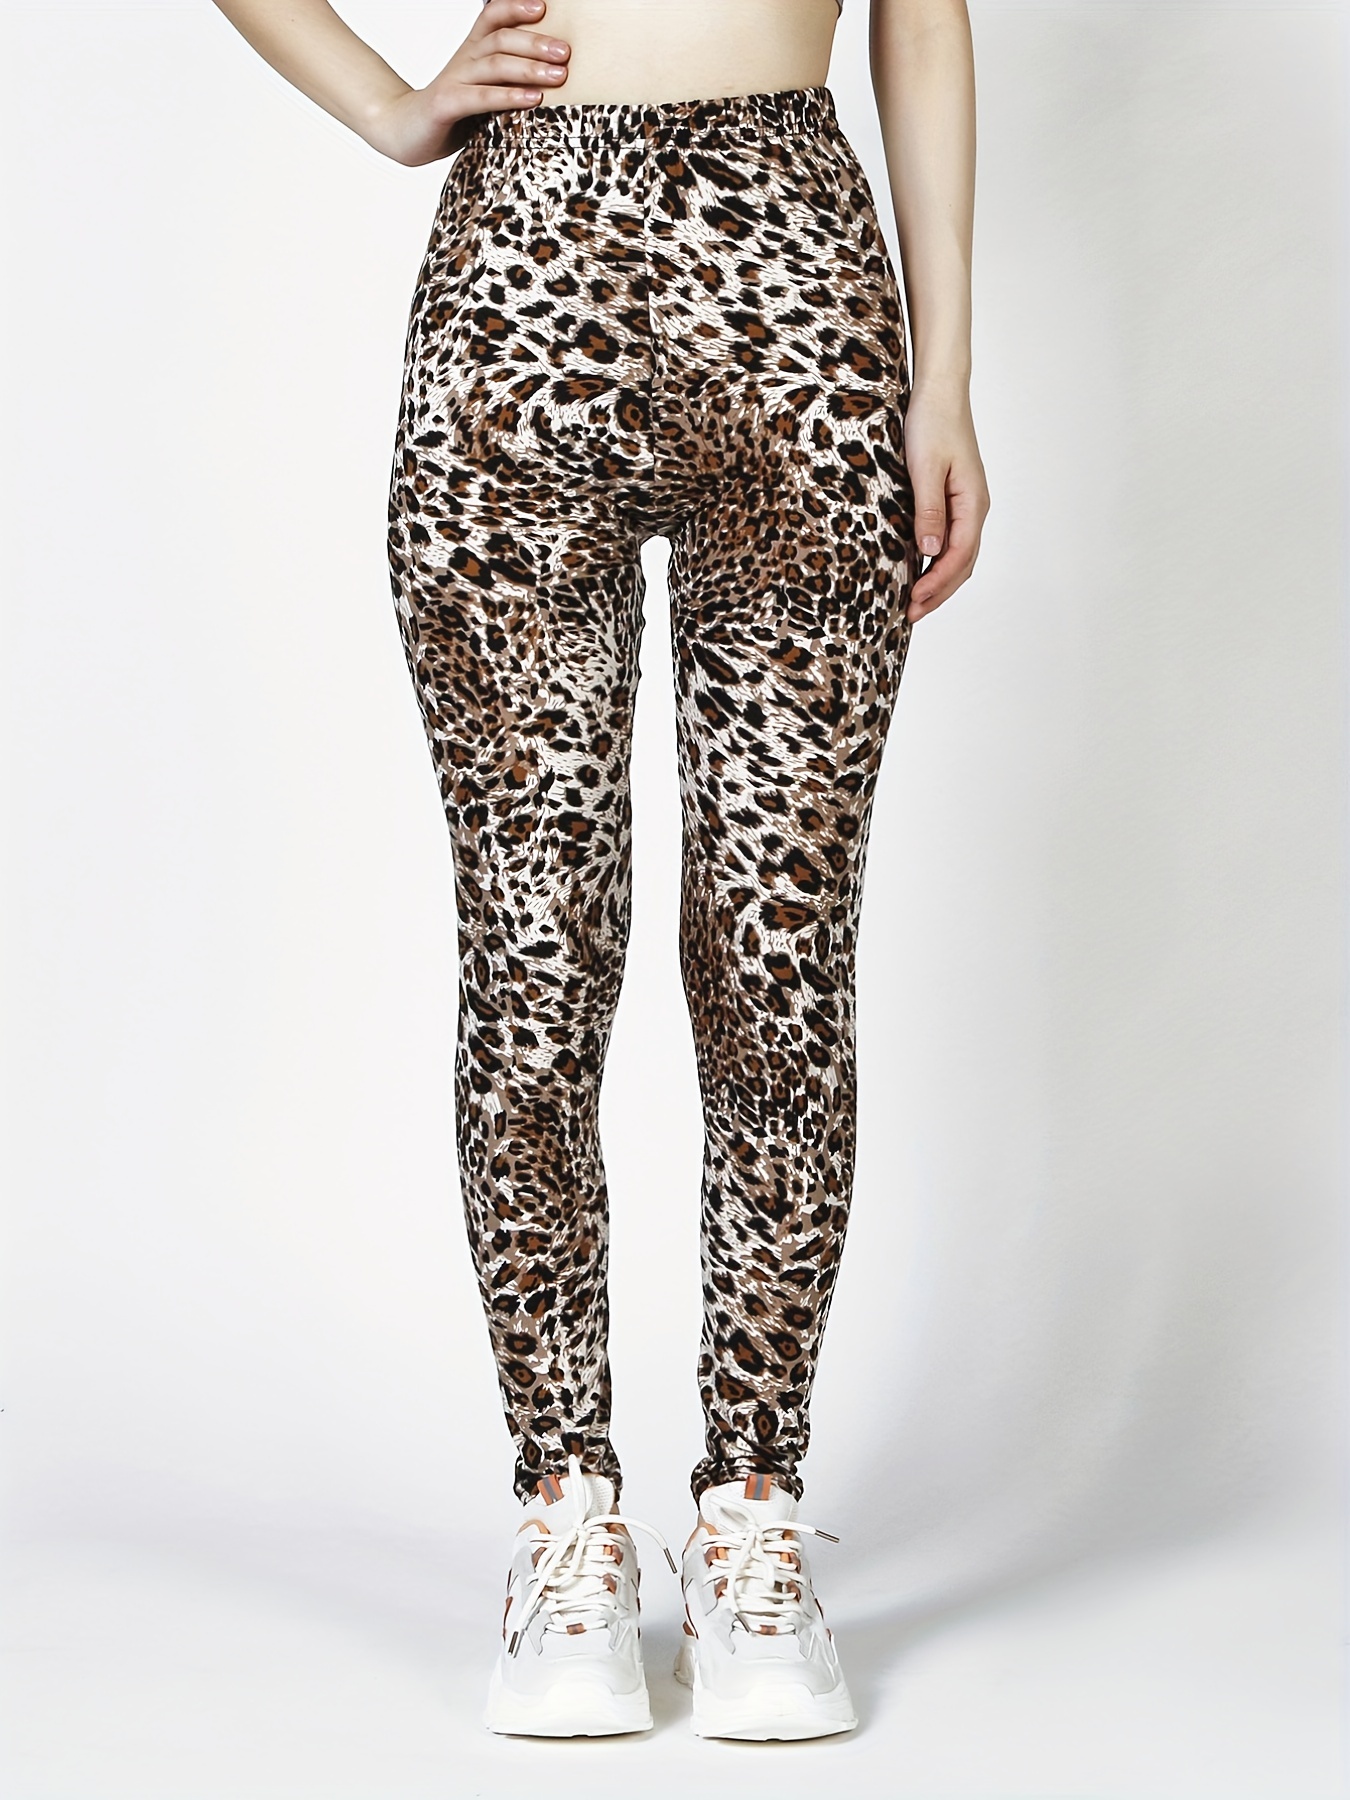 Vintage 1980's black spandex leggings, 80's leopard heels,…